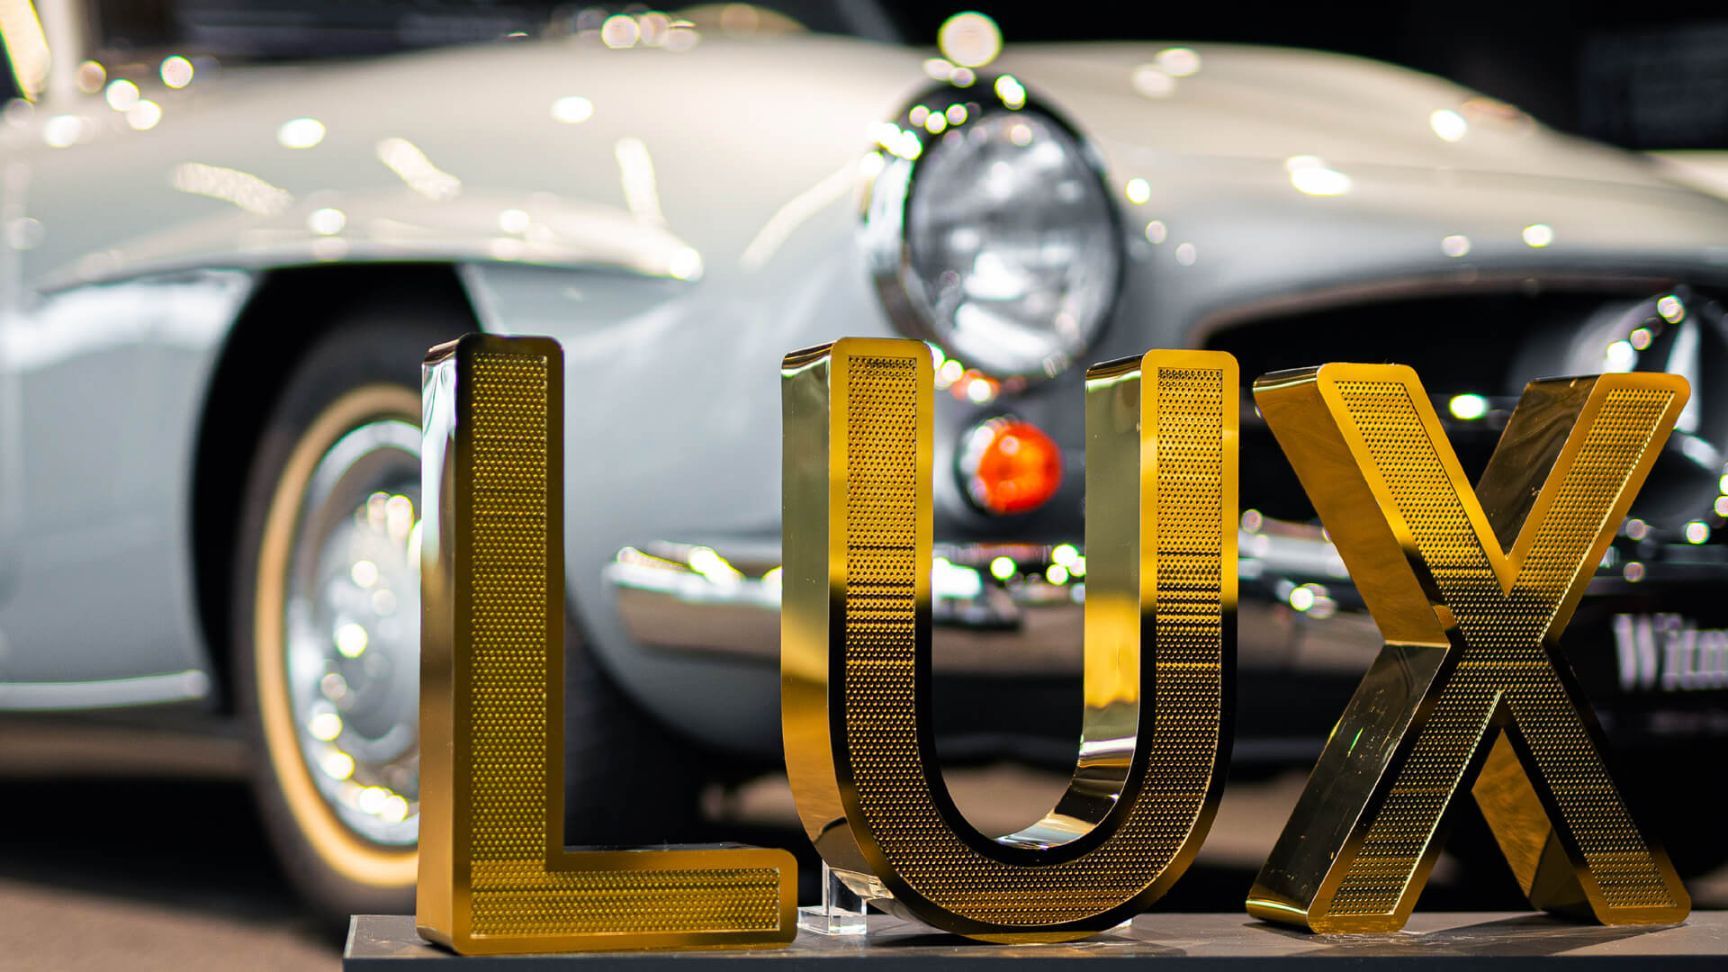 Letras de acero inoxidable perforadas LUX - Letras LUX de acero inoxidable perforado brillante, en la sala de exposiciones de Mercedes